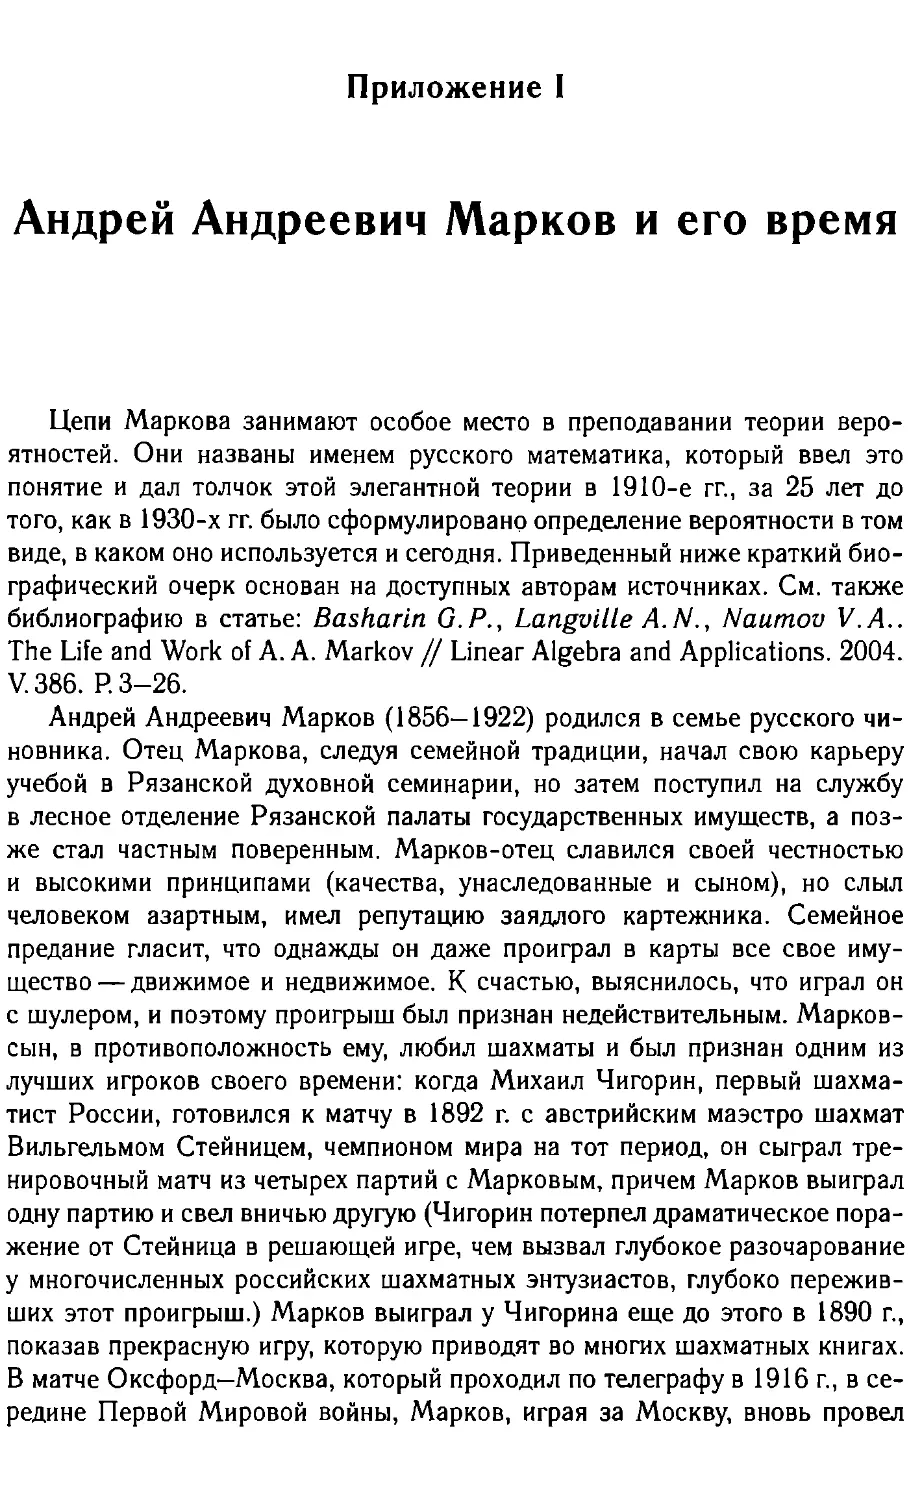 Приложение I. Андрей Андреевич Марков и его время